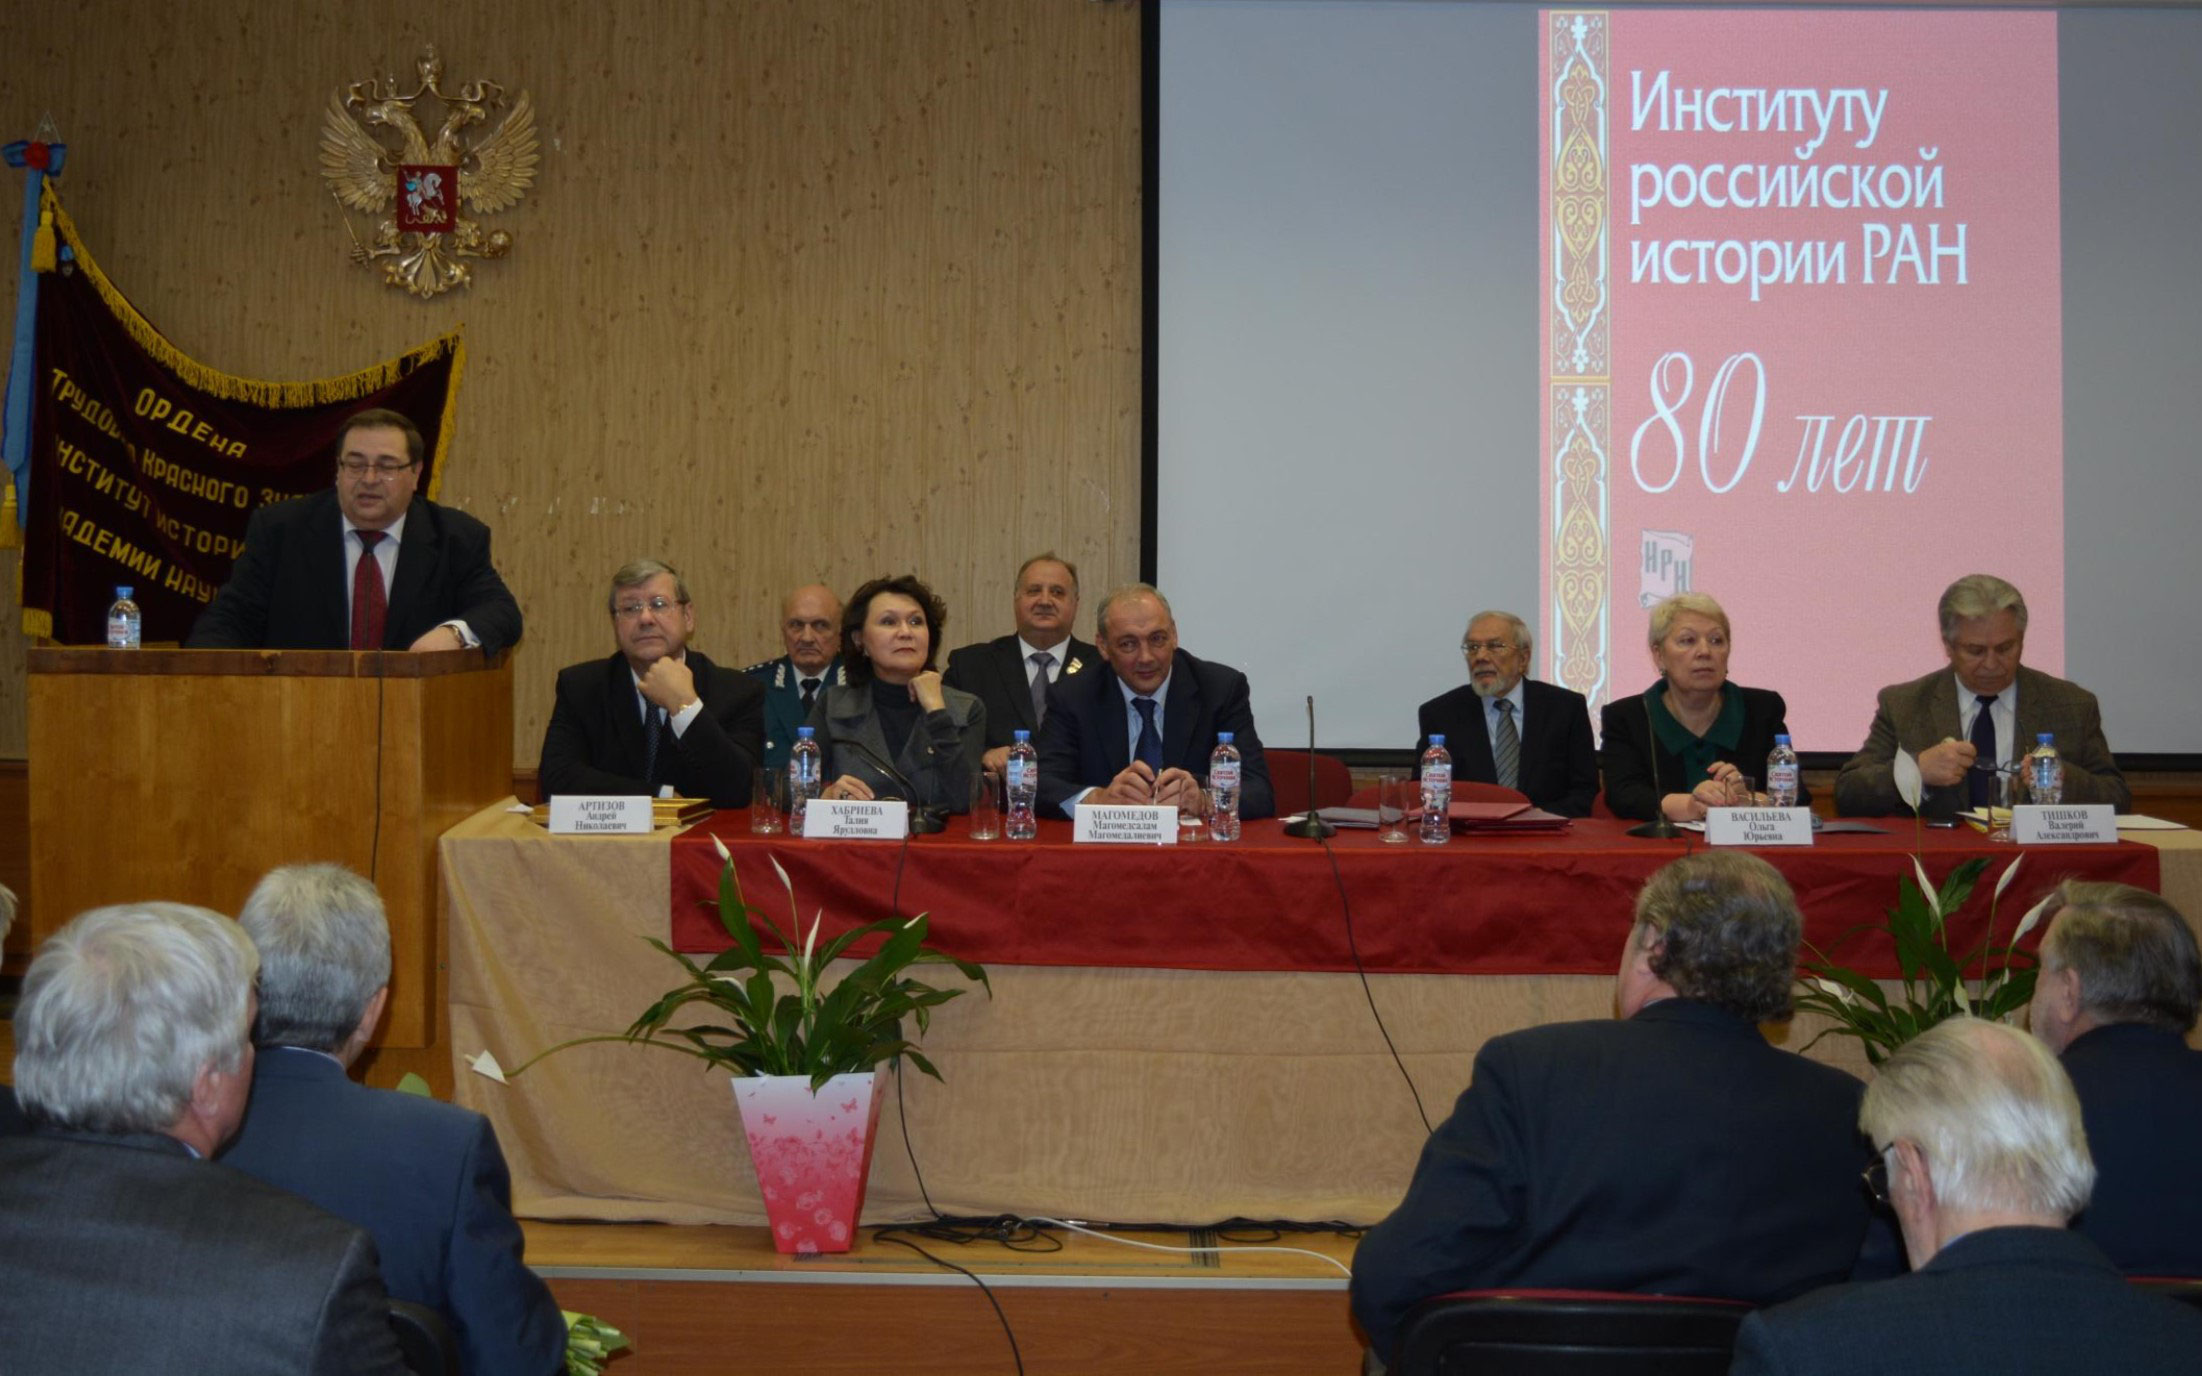 Институт российской истории РАН, 80 лет, Москва, 17 ноября 2016 г.